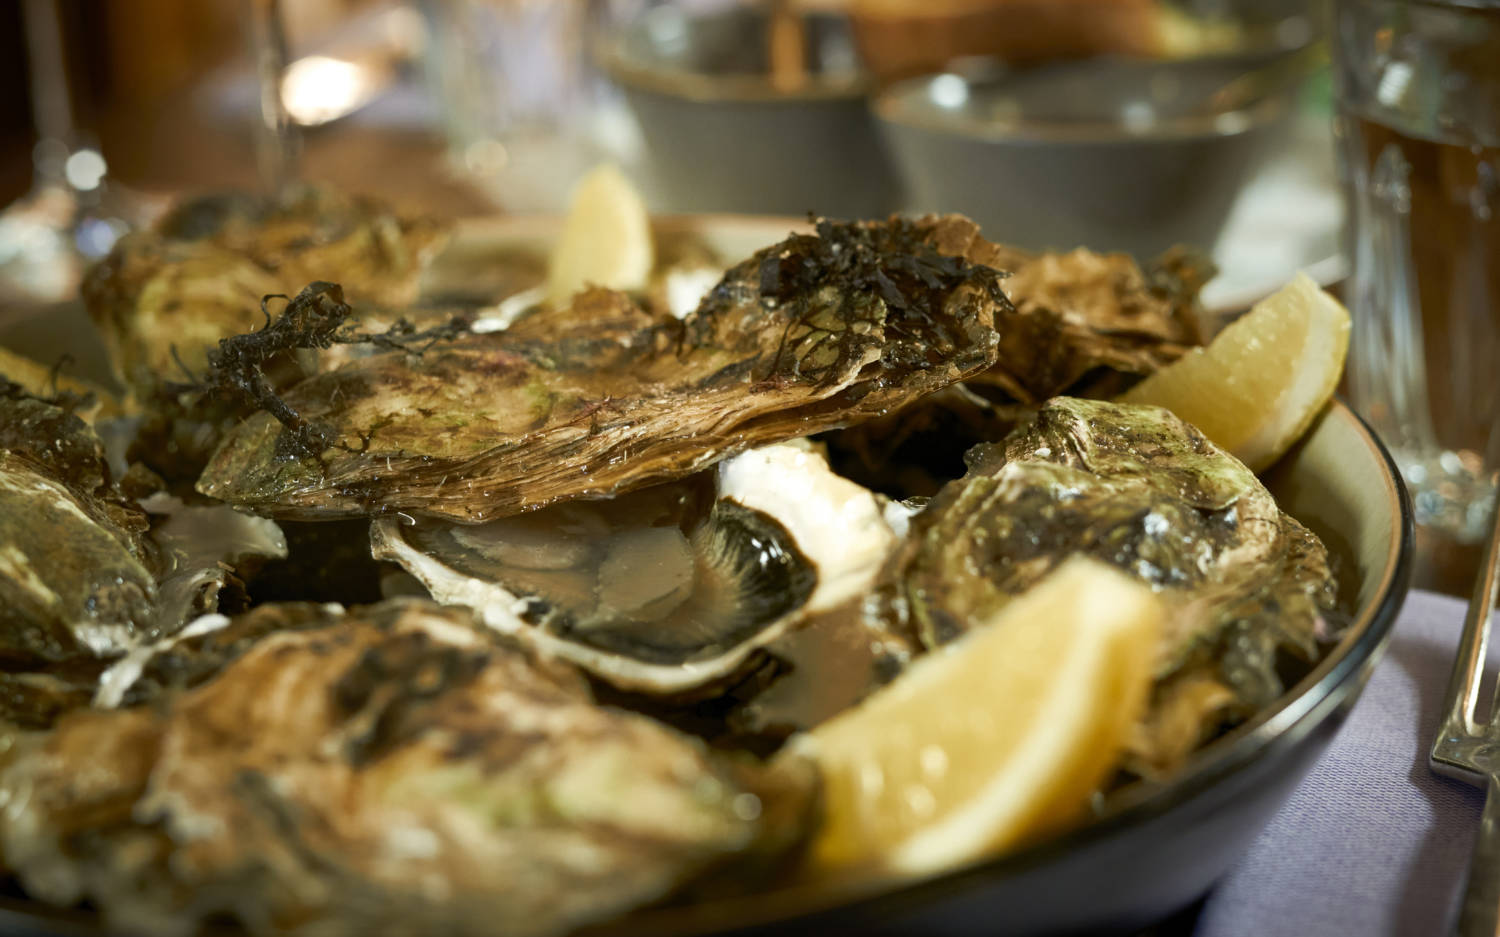 Austern und andere Meeresfrüchte sind in der französischen Küche tief verwurzelt / ©Marc Sill